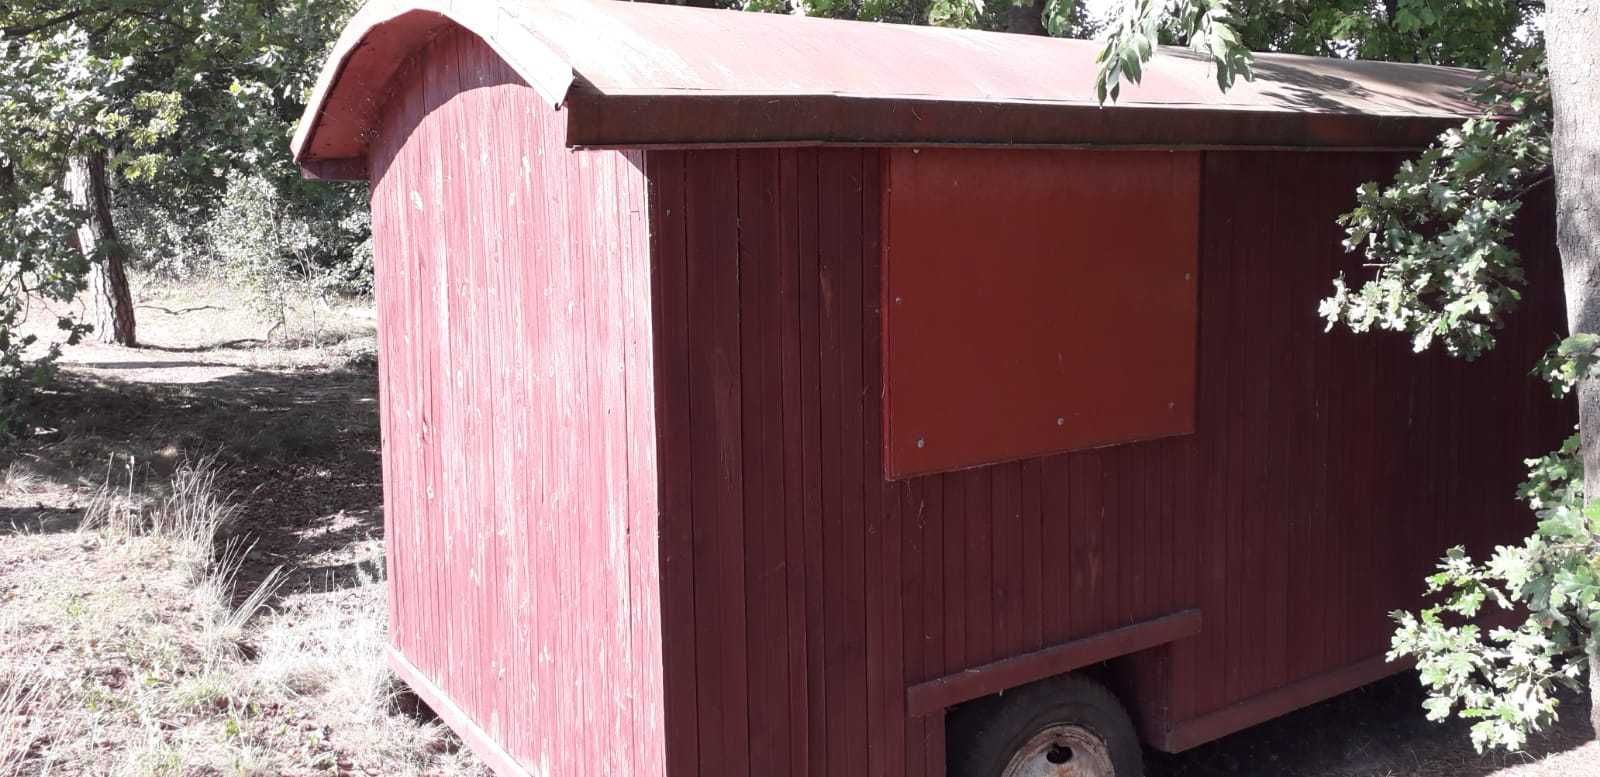 Barakowóz-wóz drzymały przyczepa socjalna domek budowe garaż schowek